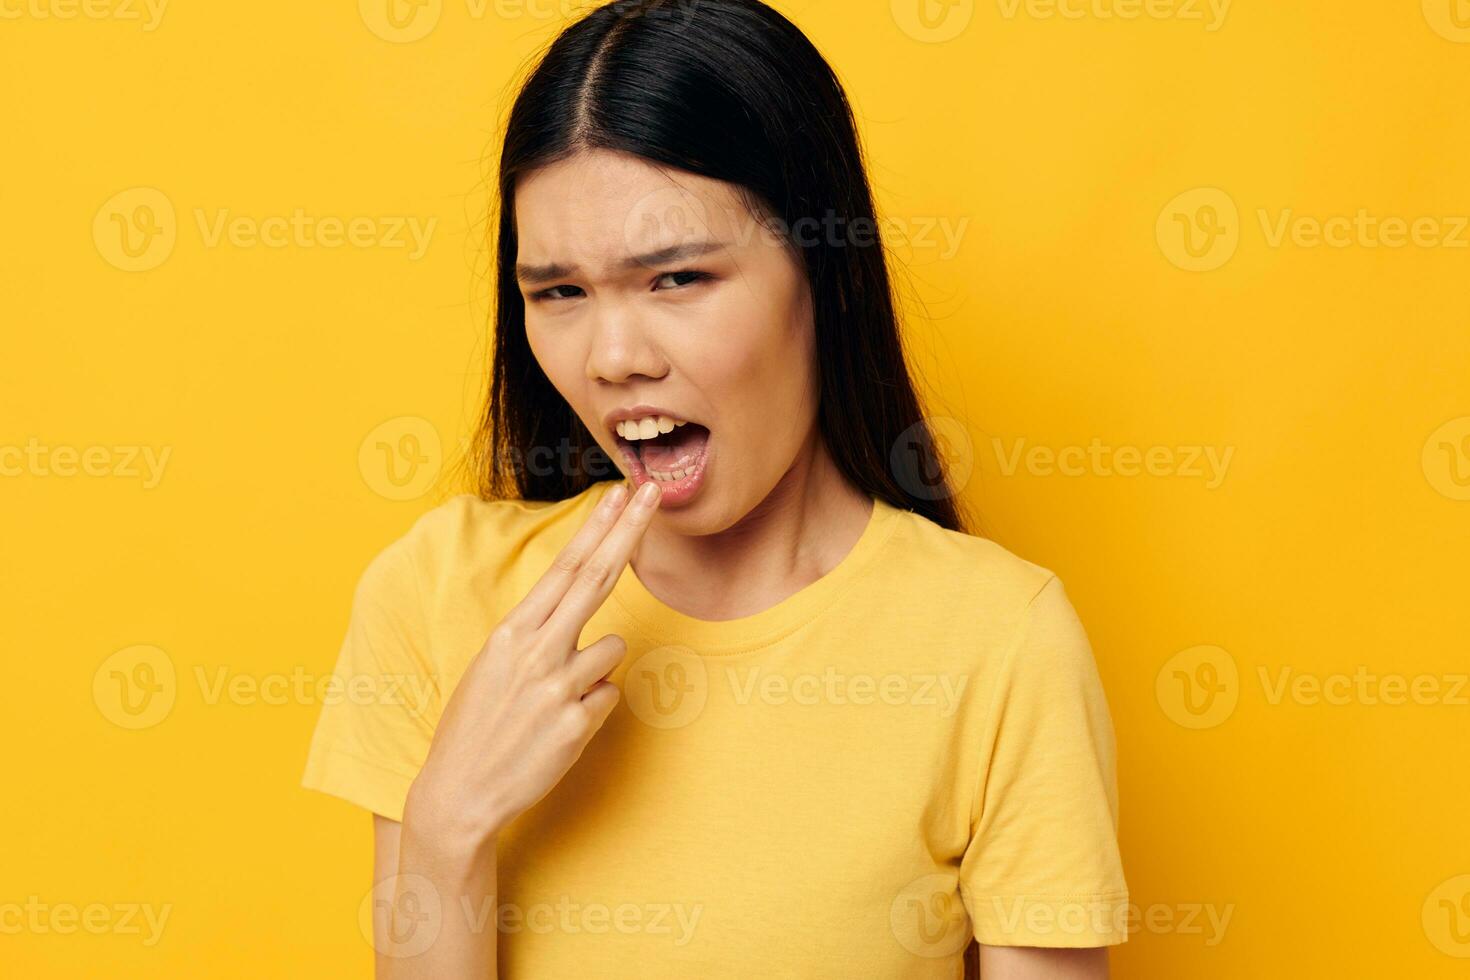 mujer en un amarillo camiseta participación su cabeza descontento estudio modelo inalterado foto